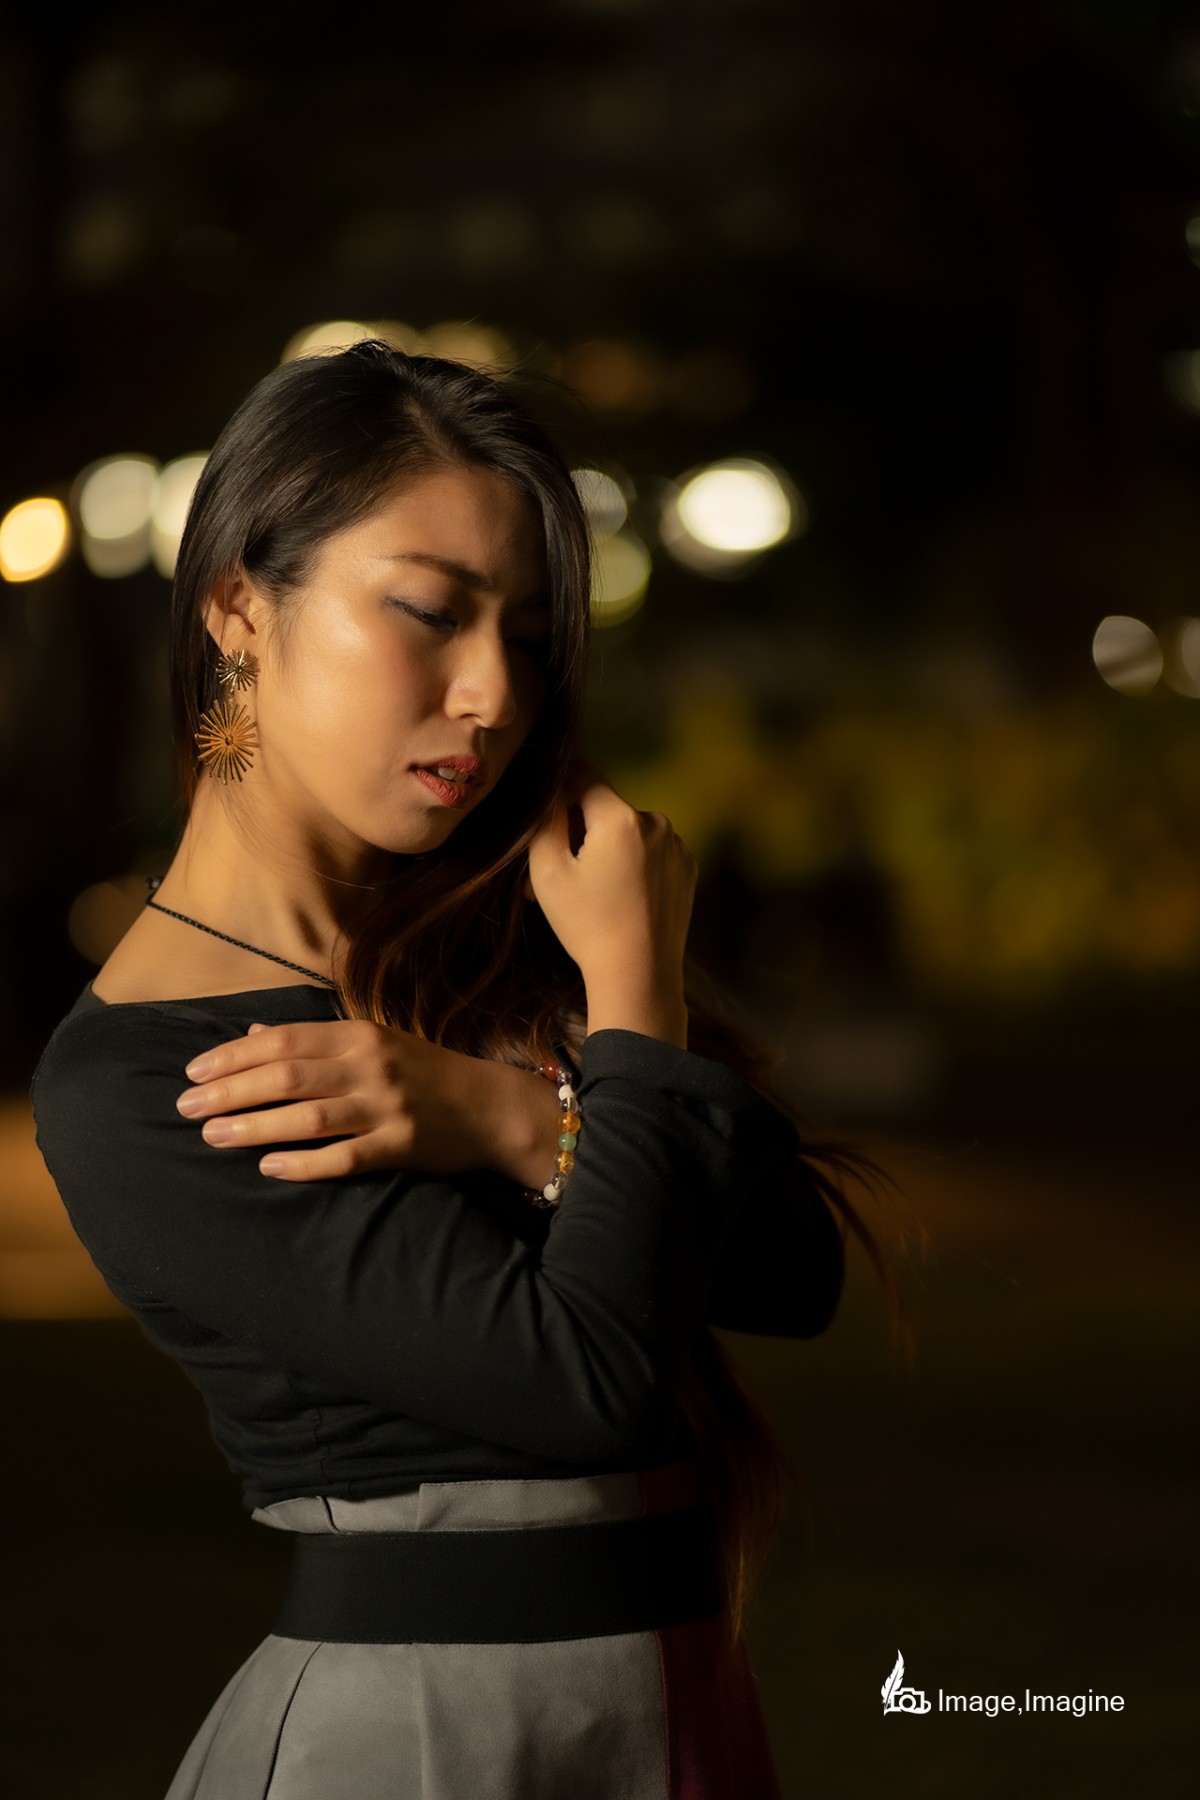 夜の街で女性を撮影した写真。女性は何かを包むように胸の上で両手をクロスさせ、どこか切なげな表情でややうつむいている。